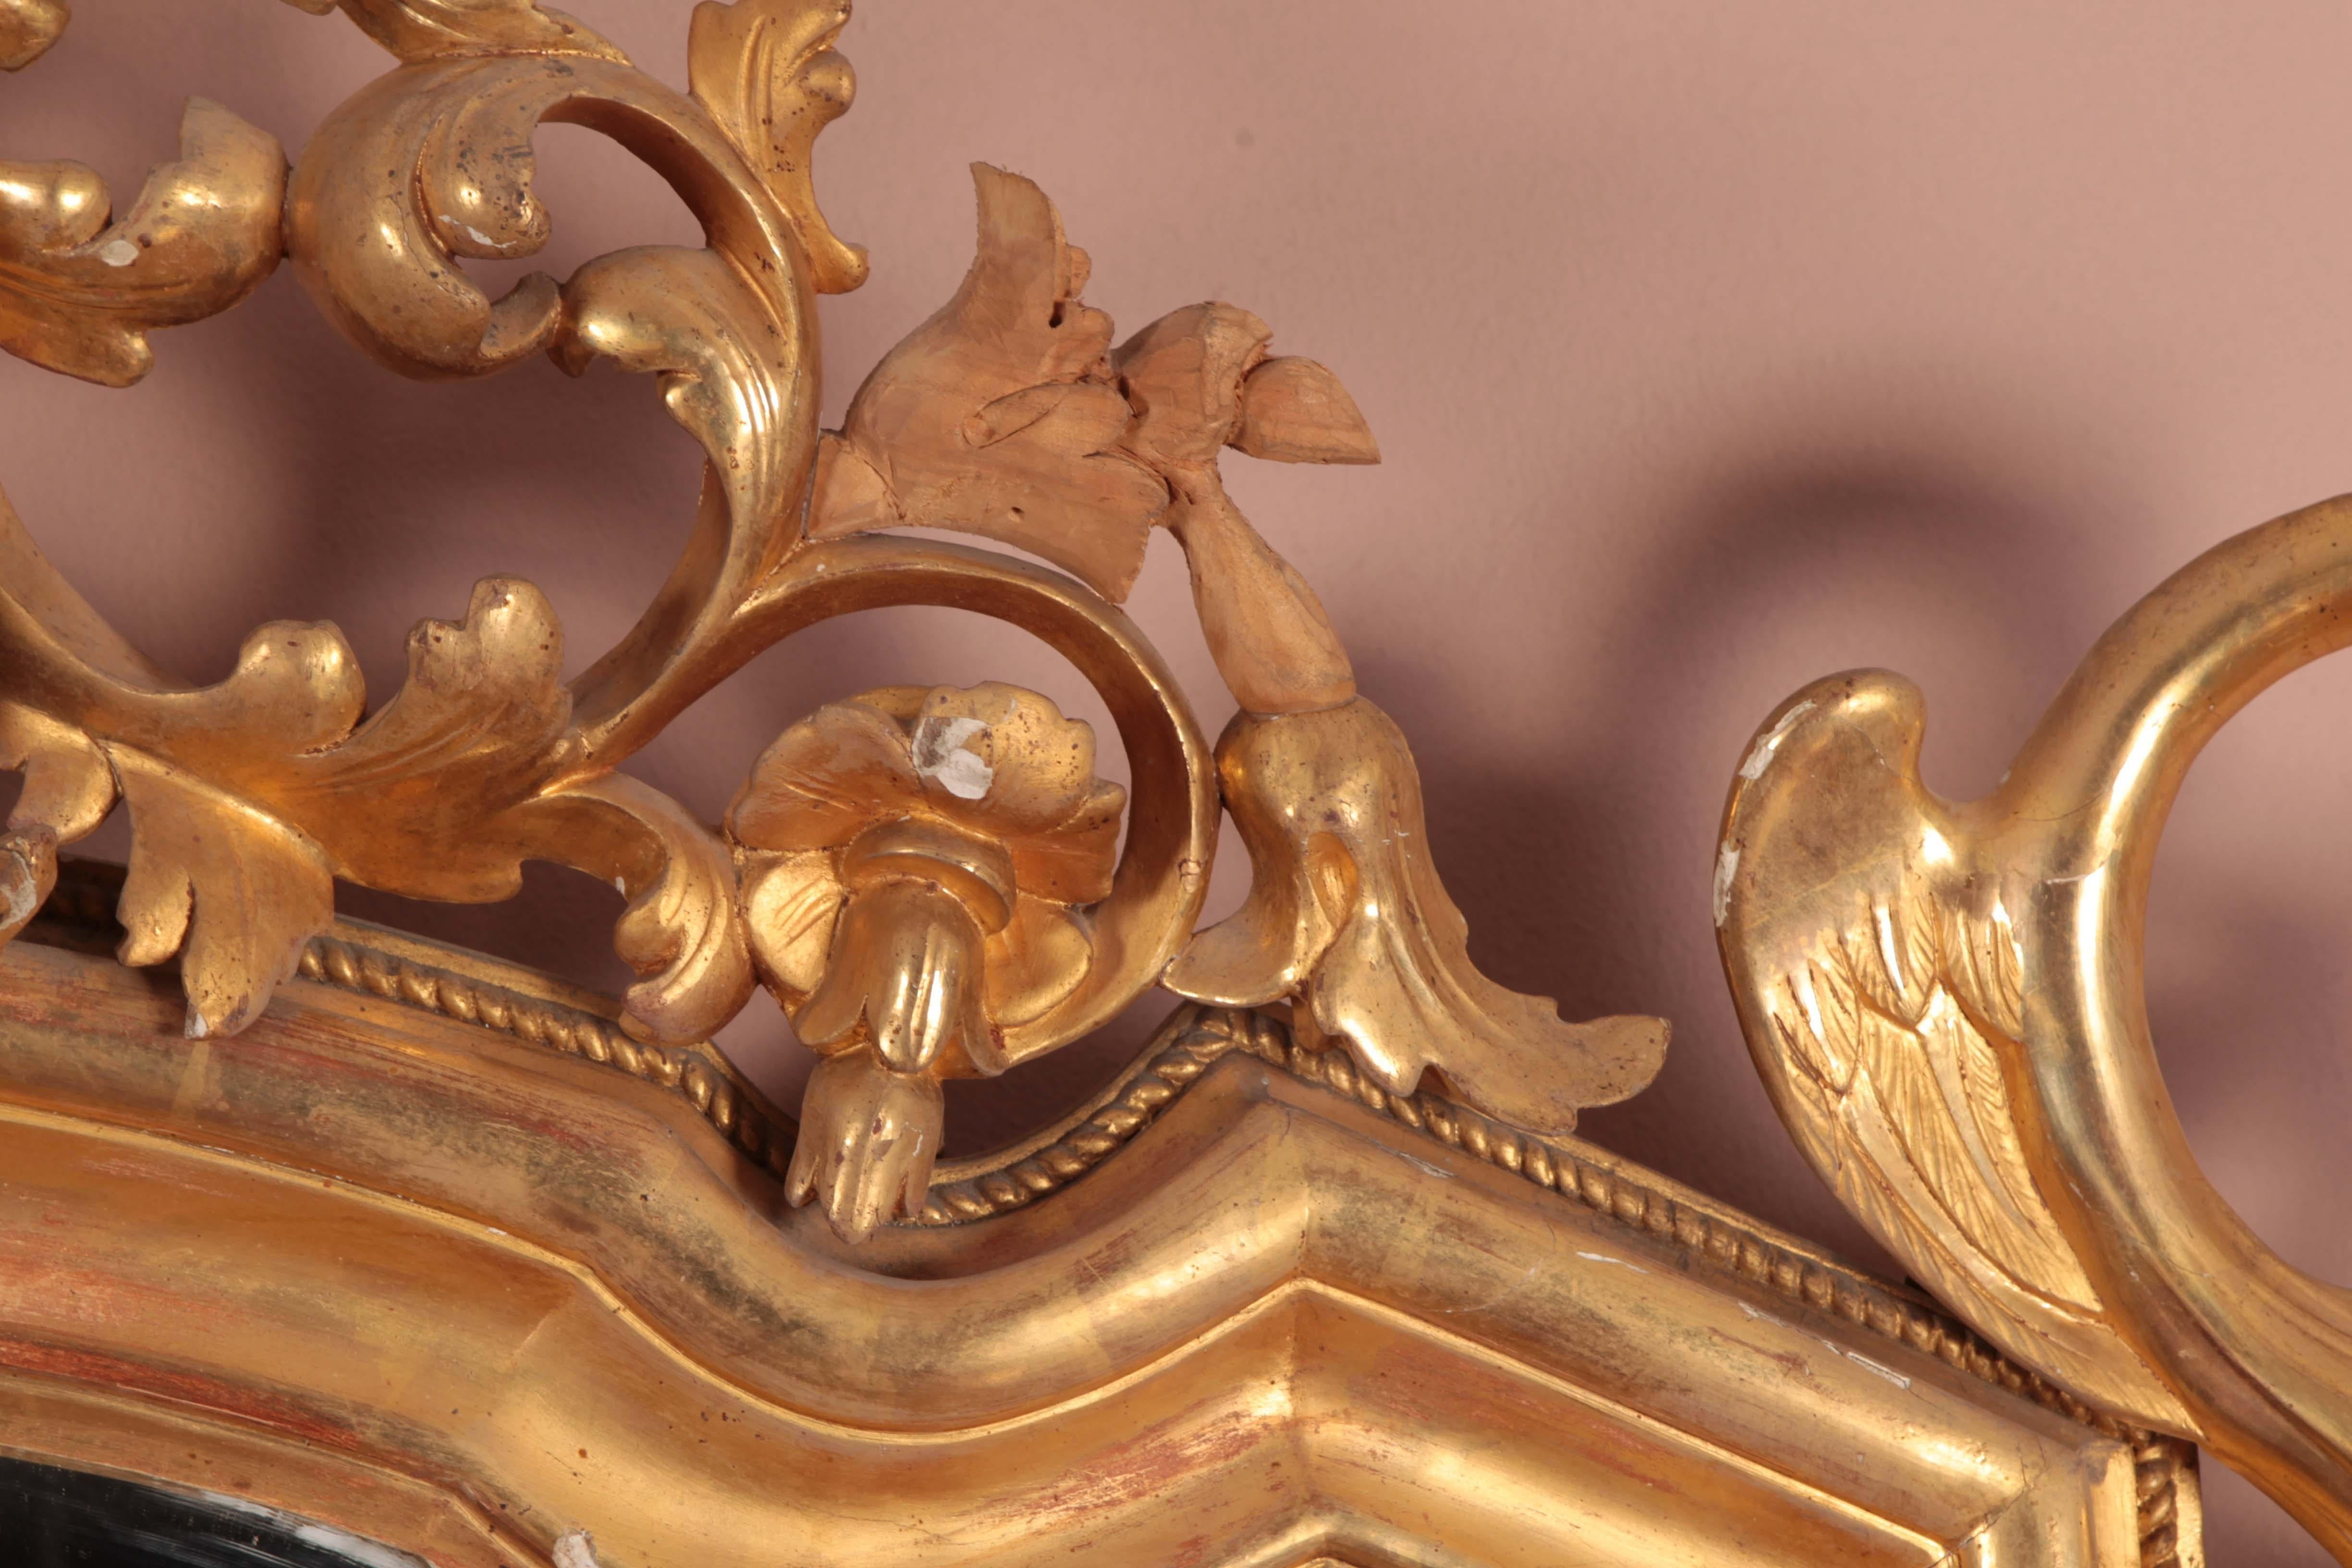 Paar prächtige rechteckige venezianische Spiegel aus geschnitztem und vergoldetem Holz. Das Cymatium ist sehr reichhaltig und mit Pflanzenmotiven verziert, zwischen denen ein Putto sitzt, während die unteren Ecken mit einem mythologischen Tiermotiv